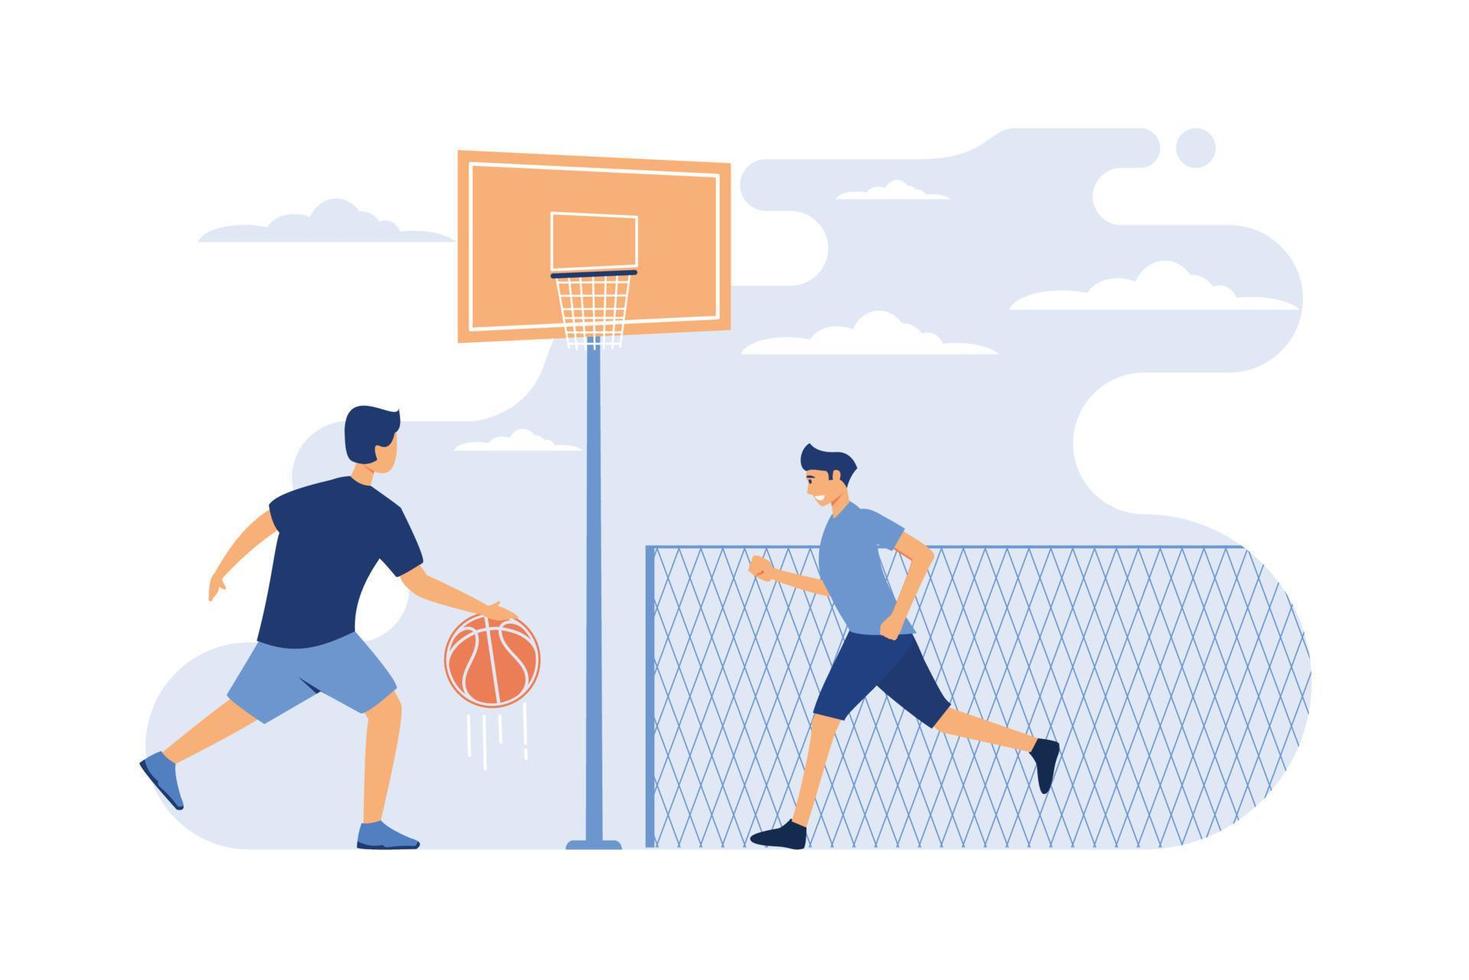 sportspiele im freien konzept. Zwei athletische junge Männer spielen Basketball im städtischen Stadion. vektor